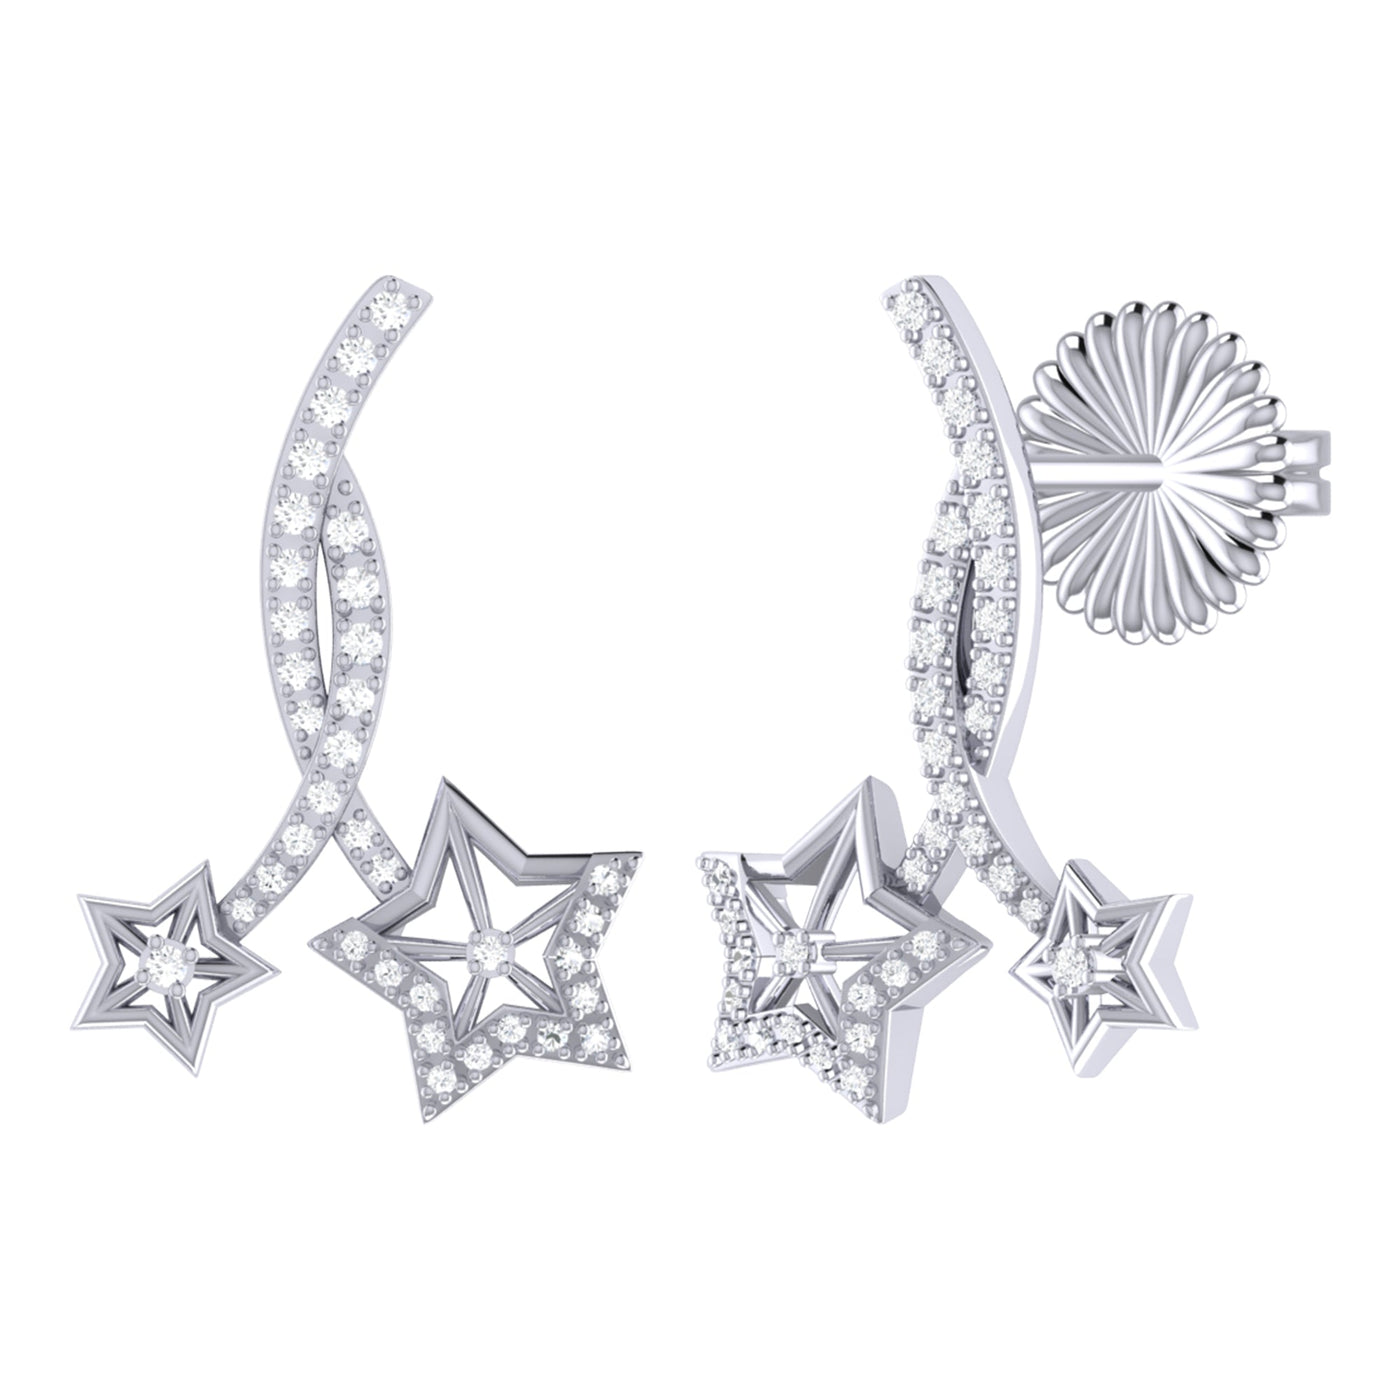 Stud earrings - Star Dance - 925 sterling silver - diamonds